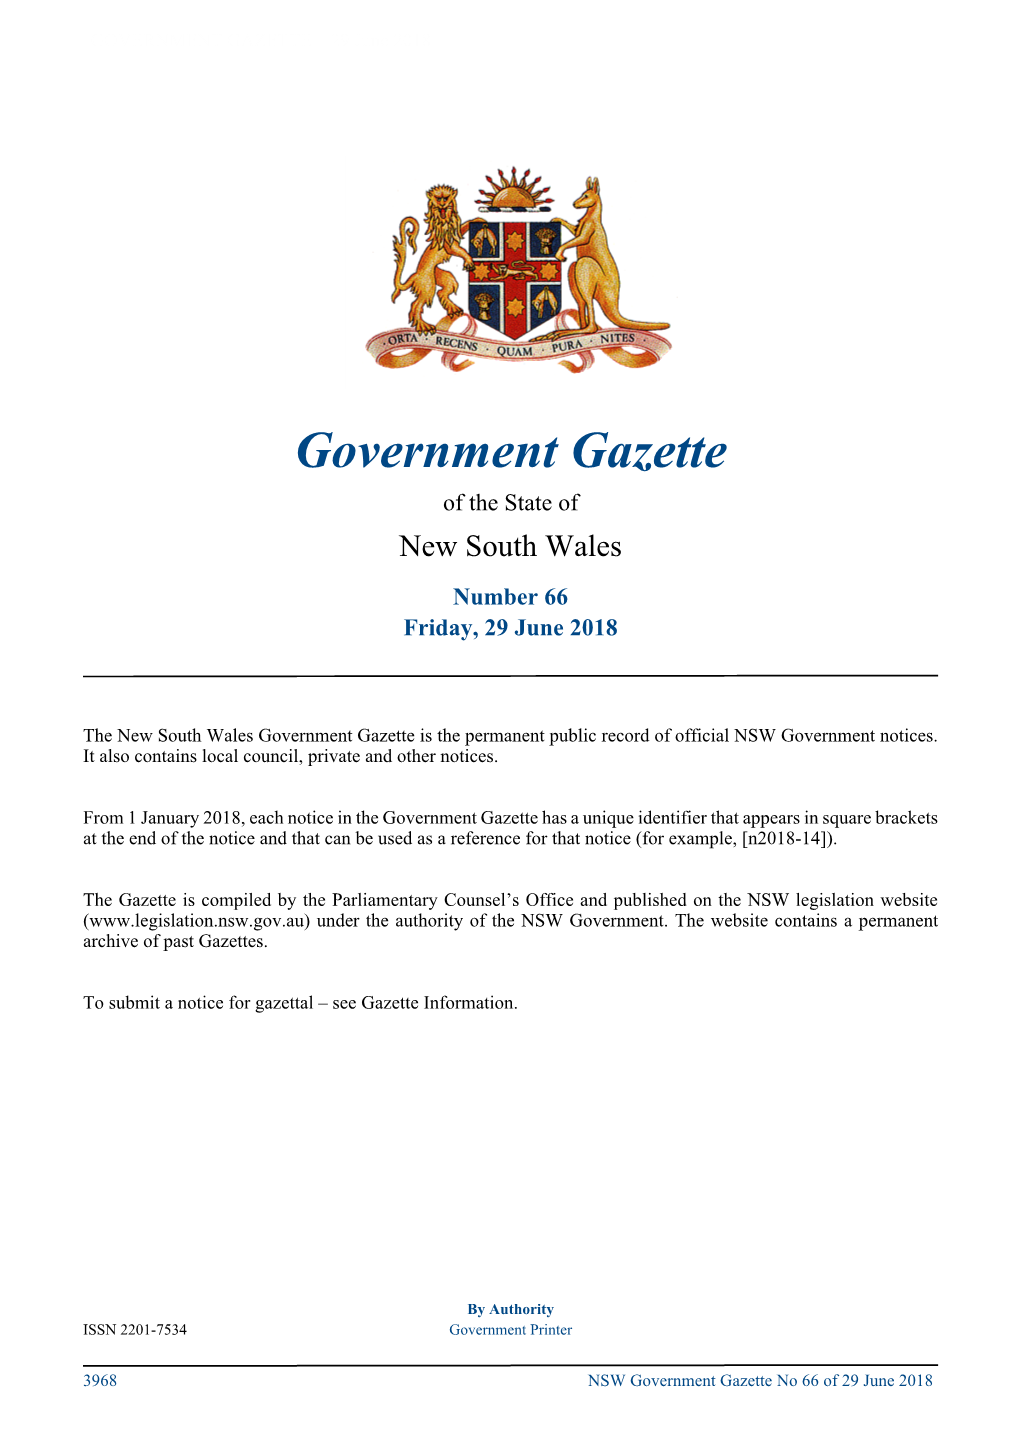 GOVERNMENT GAZETTE – 29 June 2018